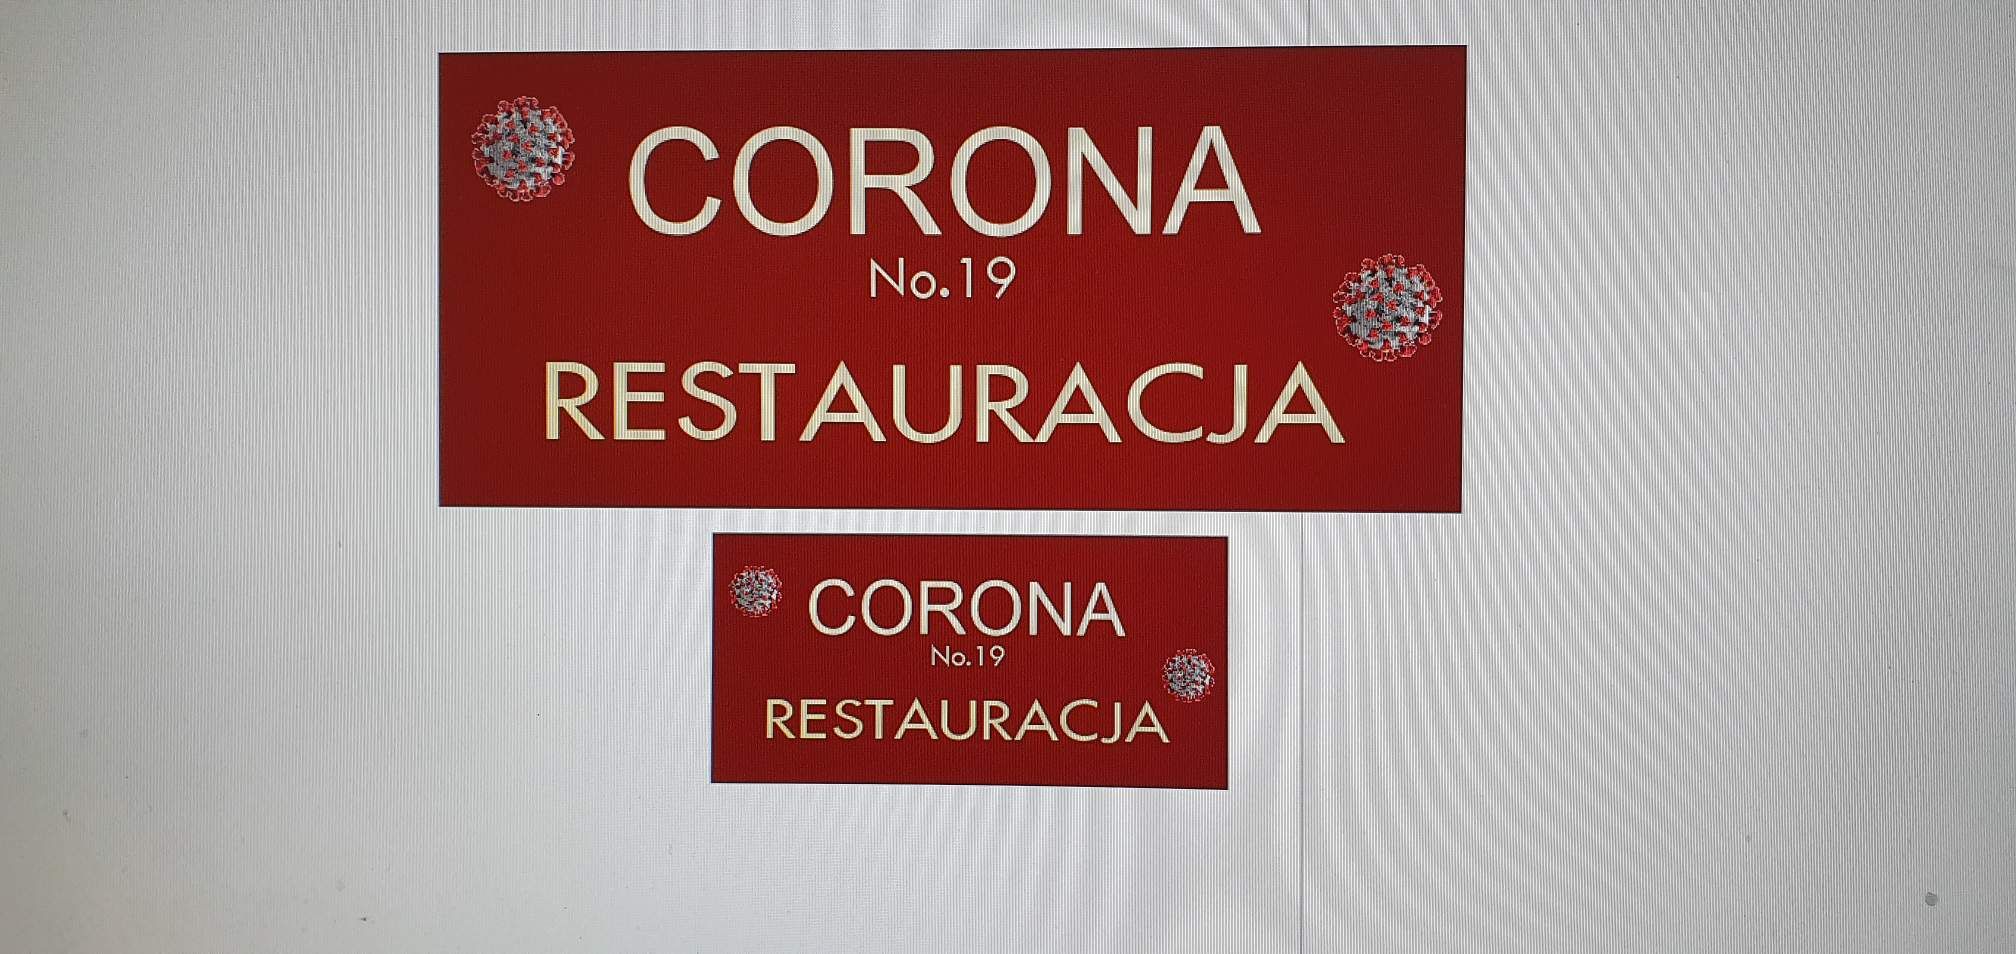 W Lublinie powstaje restauracja Corona No. 19. Pomimo zakazu, ma być w pełni dostępna dla klientów